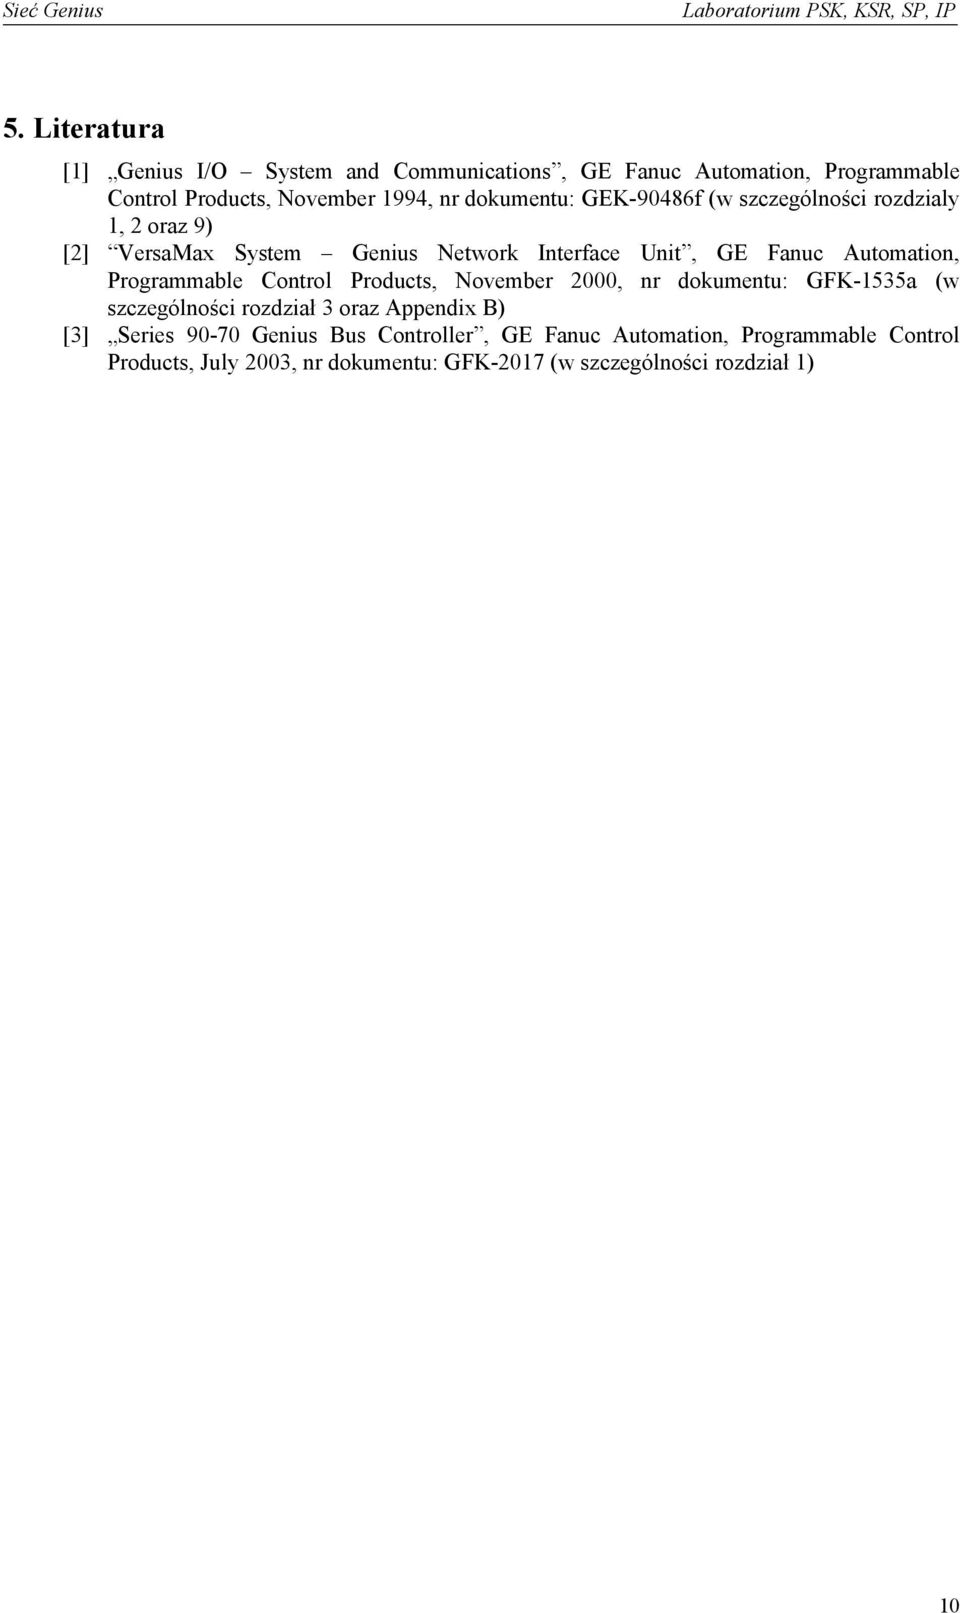 Automation, Programmable Control Products, November 2000, nr dokumentu: GFK-1535a (w szczególności rozdział 3 oraz Appendix B) [3]